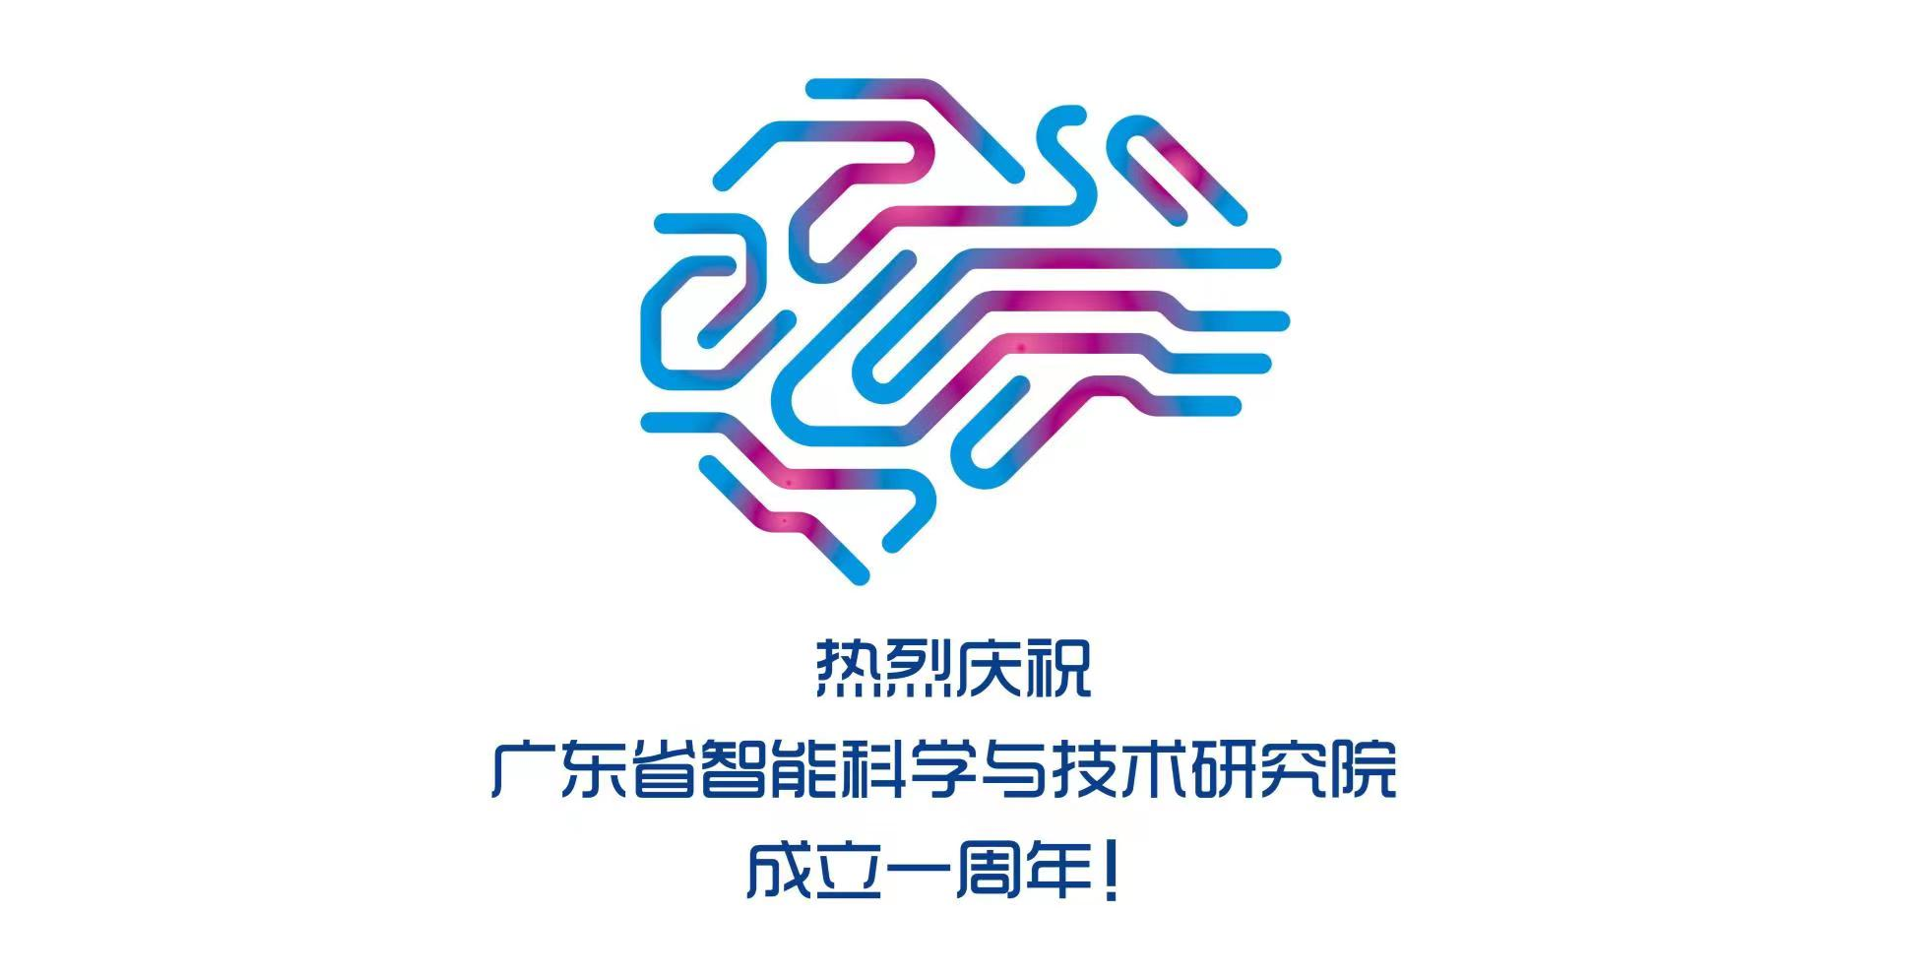 庆祝丨广东省智能科学与技术研究院成立一周年！